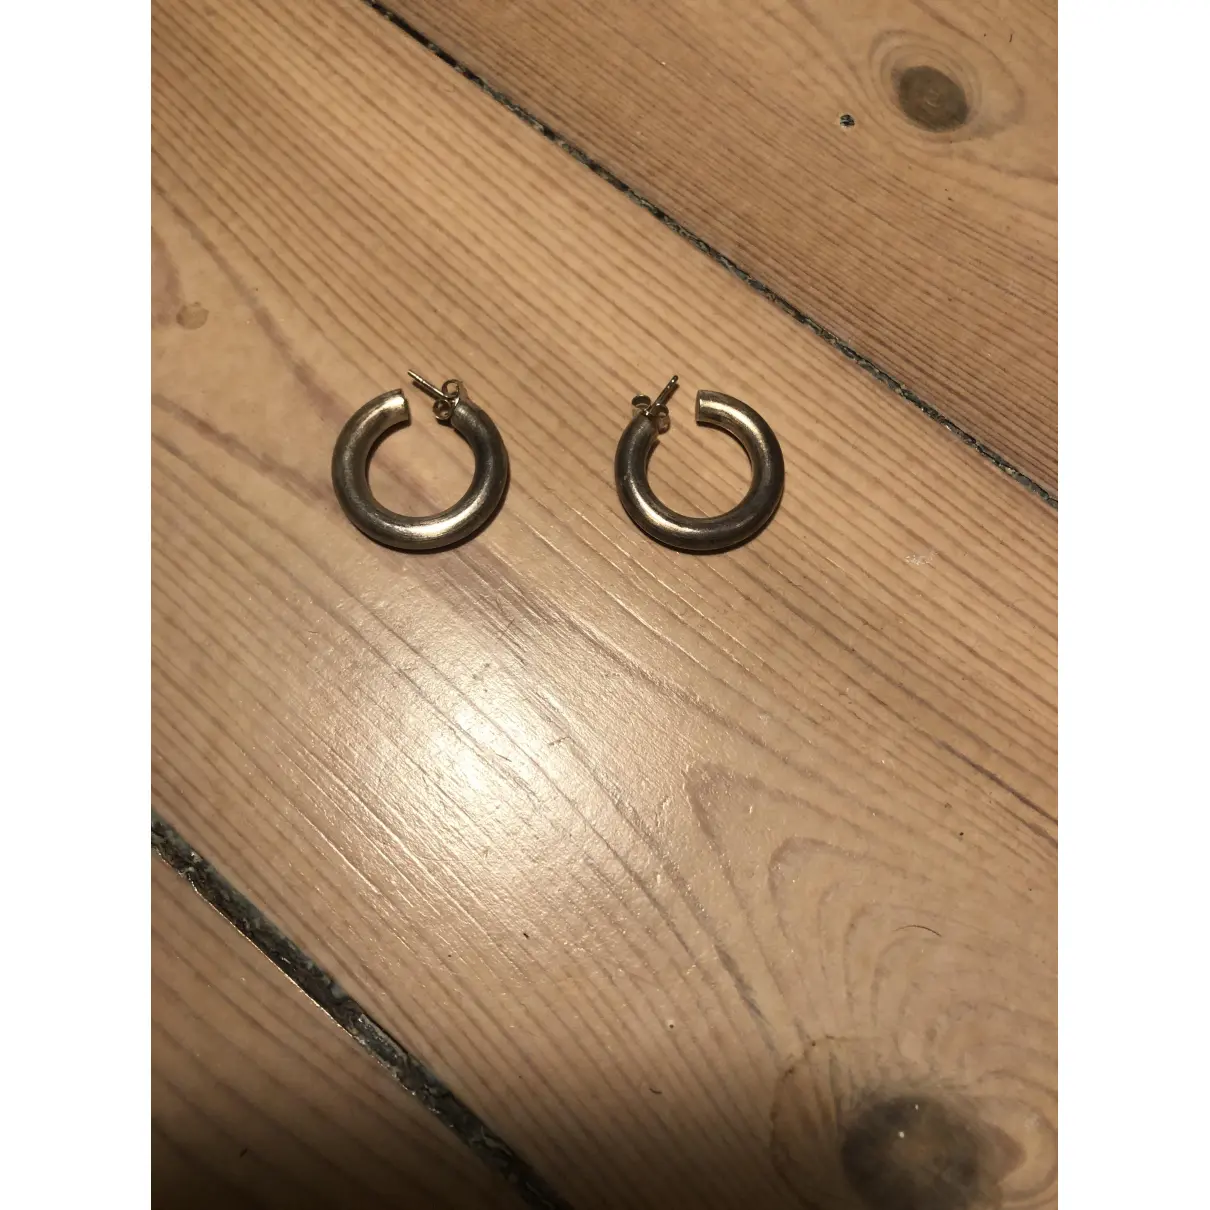 Buy Jane Koenig Silver earrings online